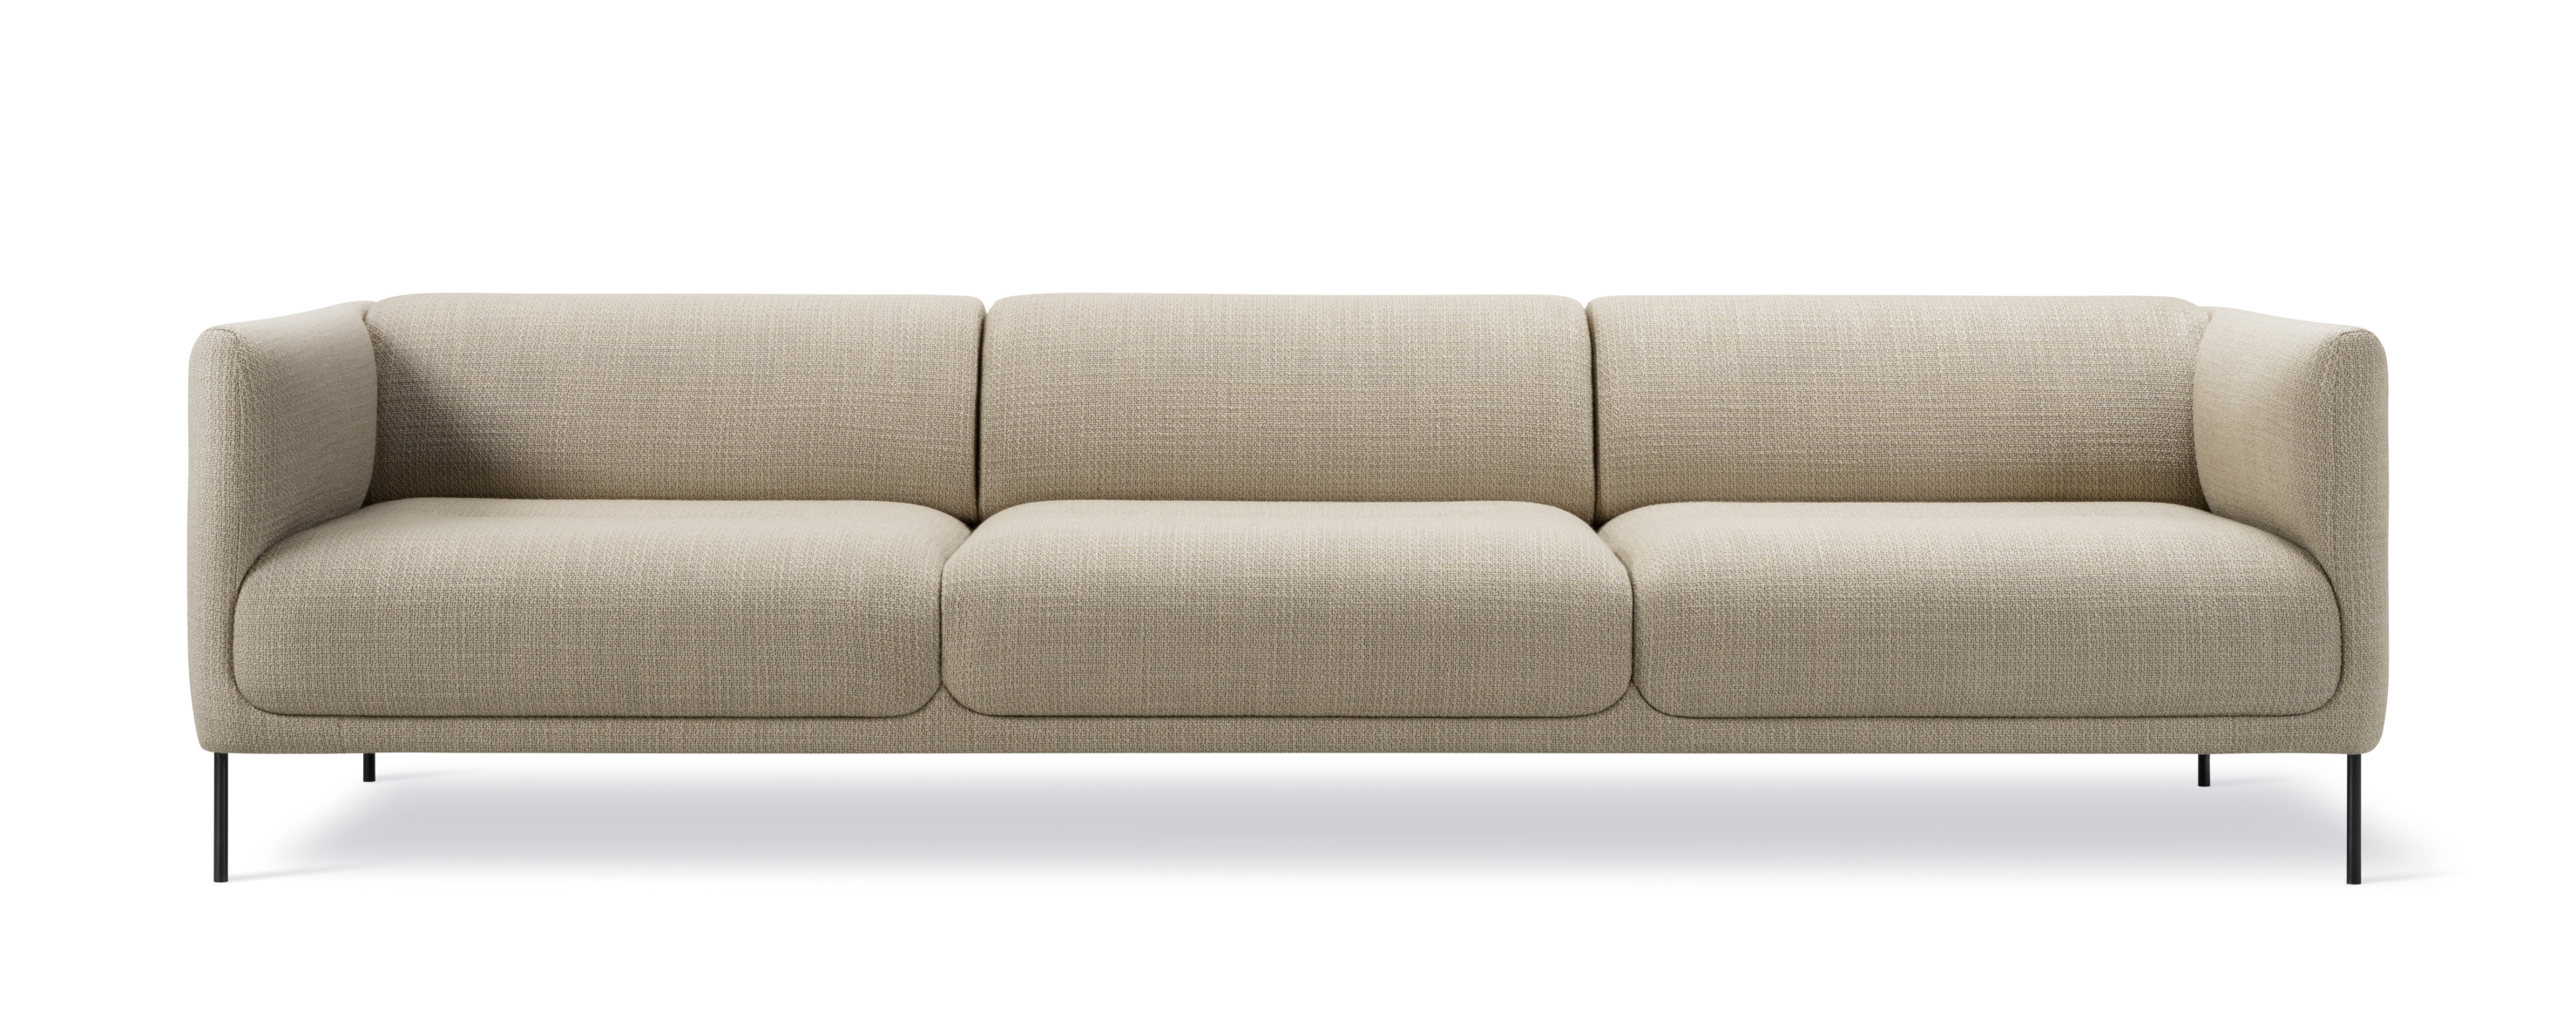 Konami Sofa 3-Sitzer, schwarz / sisu 0105